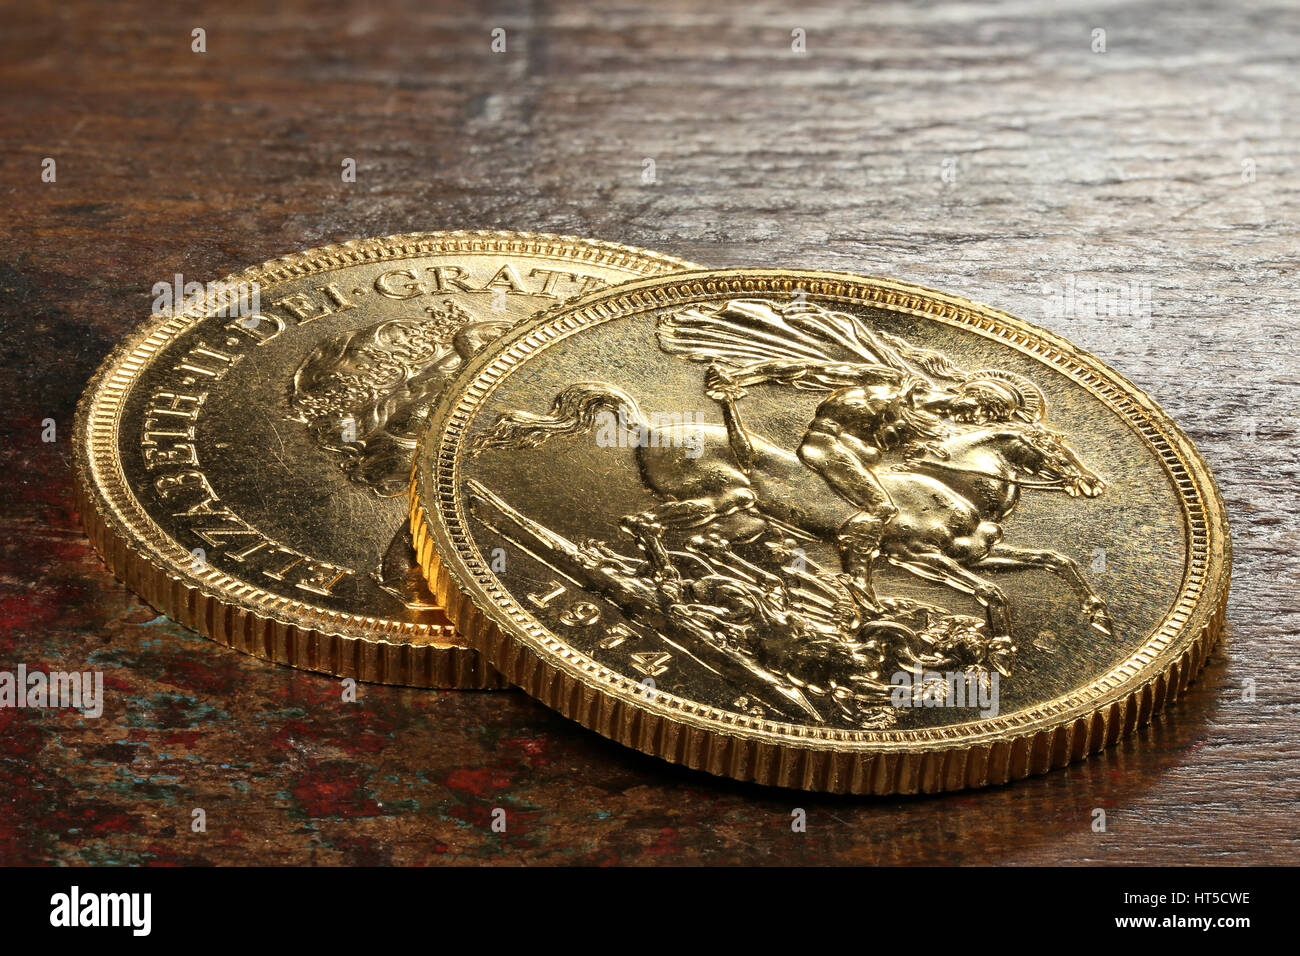 Britische Sovereign gold Münzen auf rustikalen hölzernen Hintergrund Stockfoto